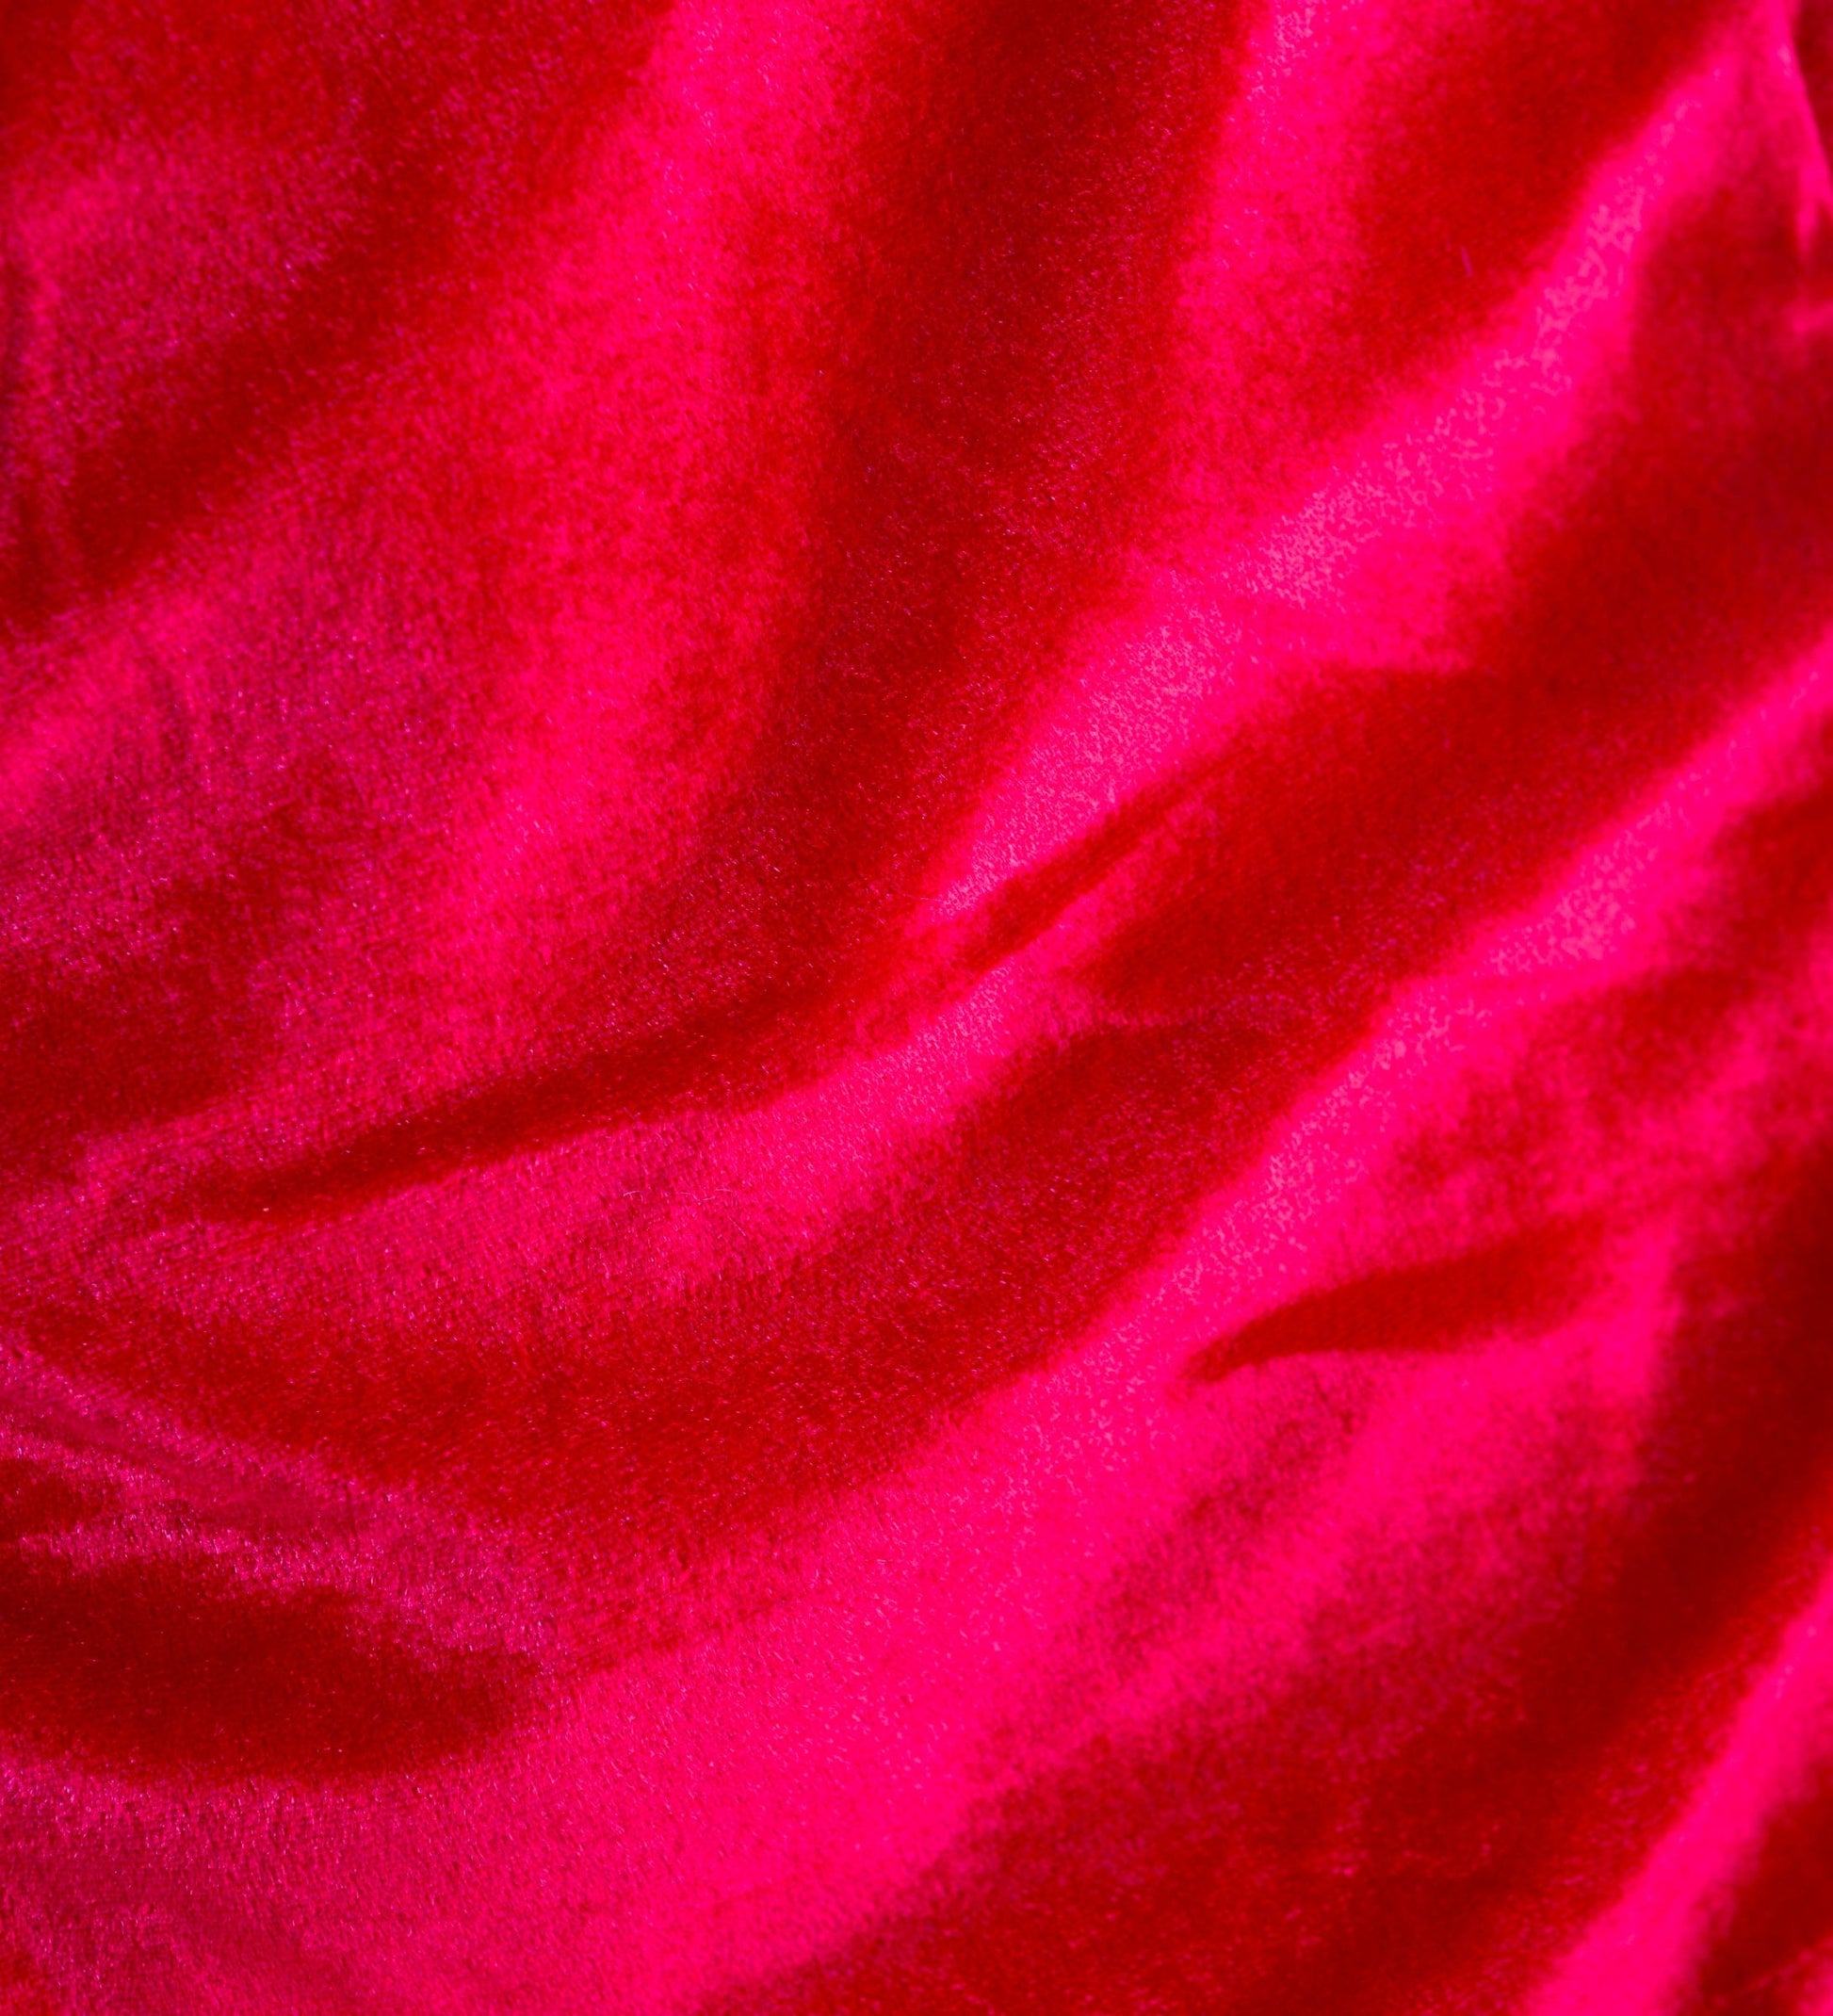 Super-Sized Red Velveteen Christmas Stocking